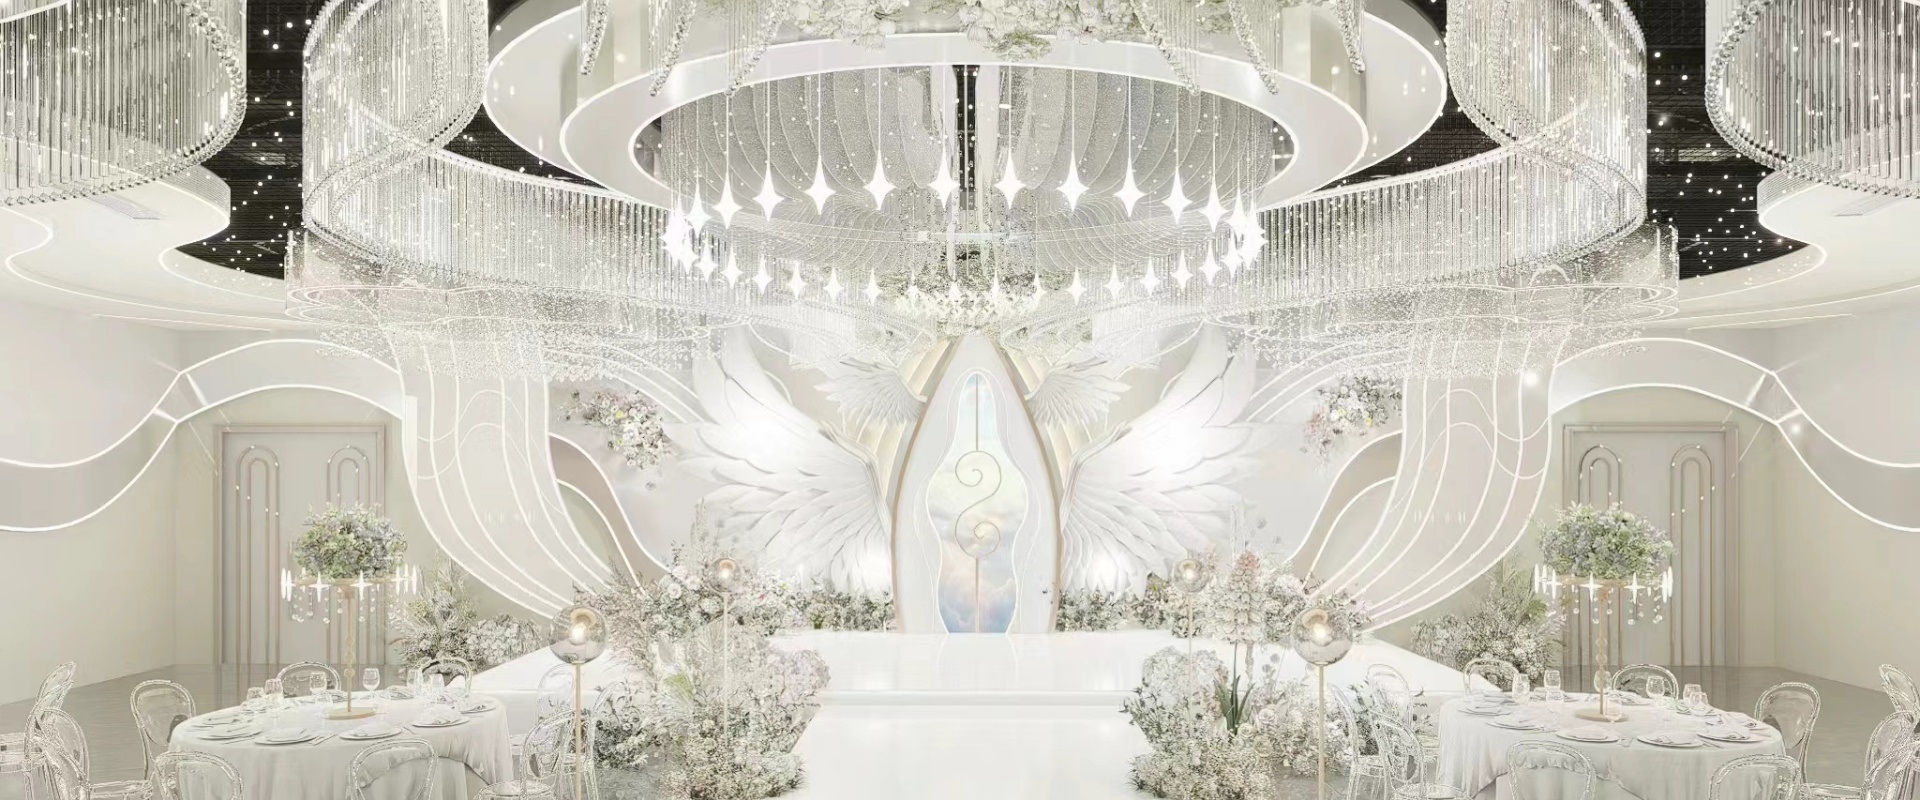 Dutti LED Modern Non-standard Chandelier Large Crystal Ceiling Pendant Lighting OEM custom for Wedding Ballroom